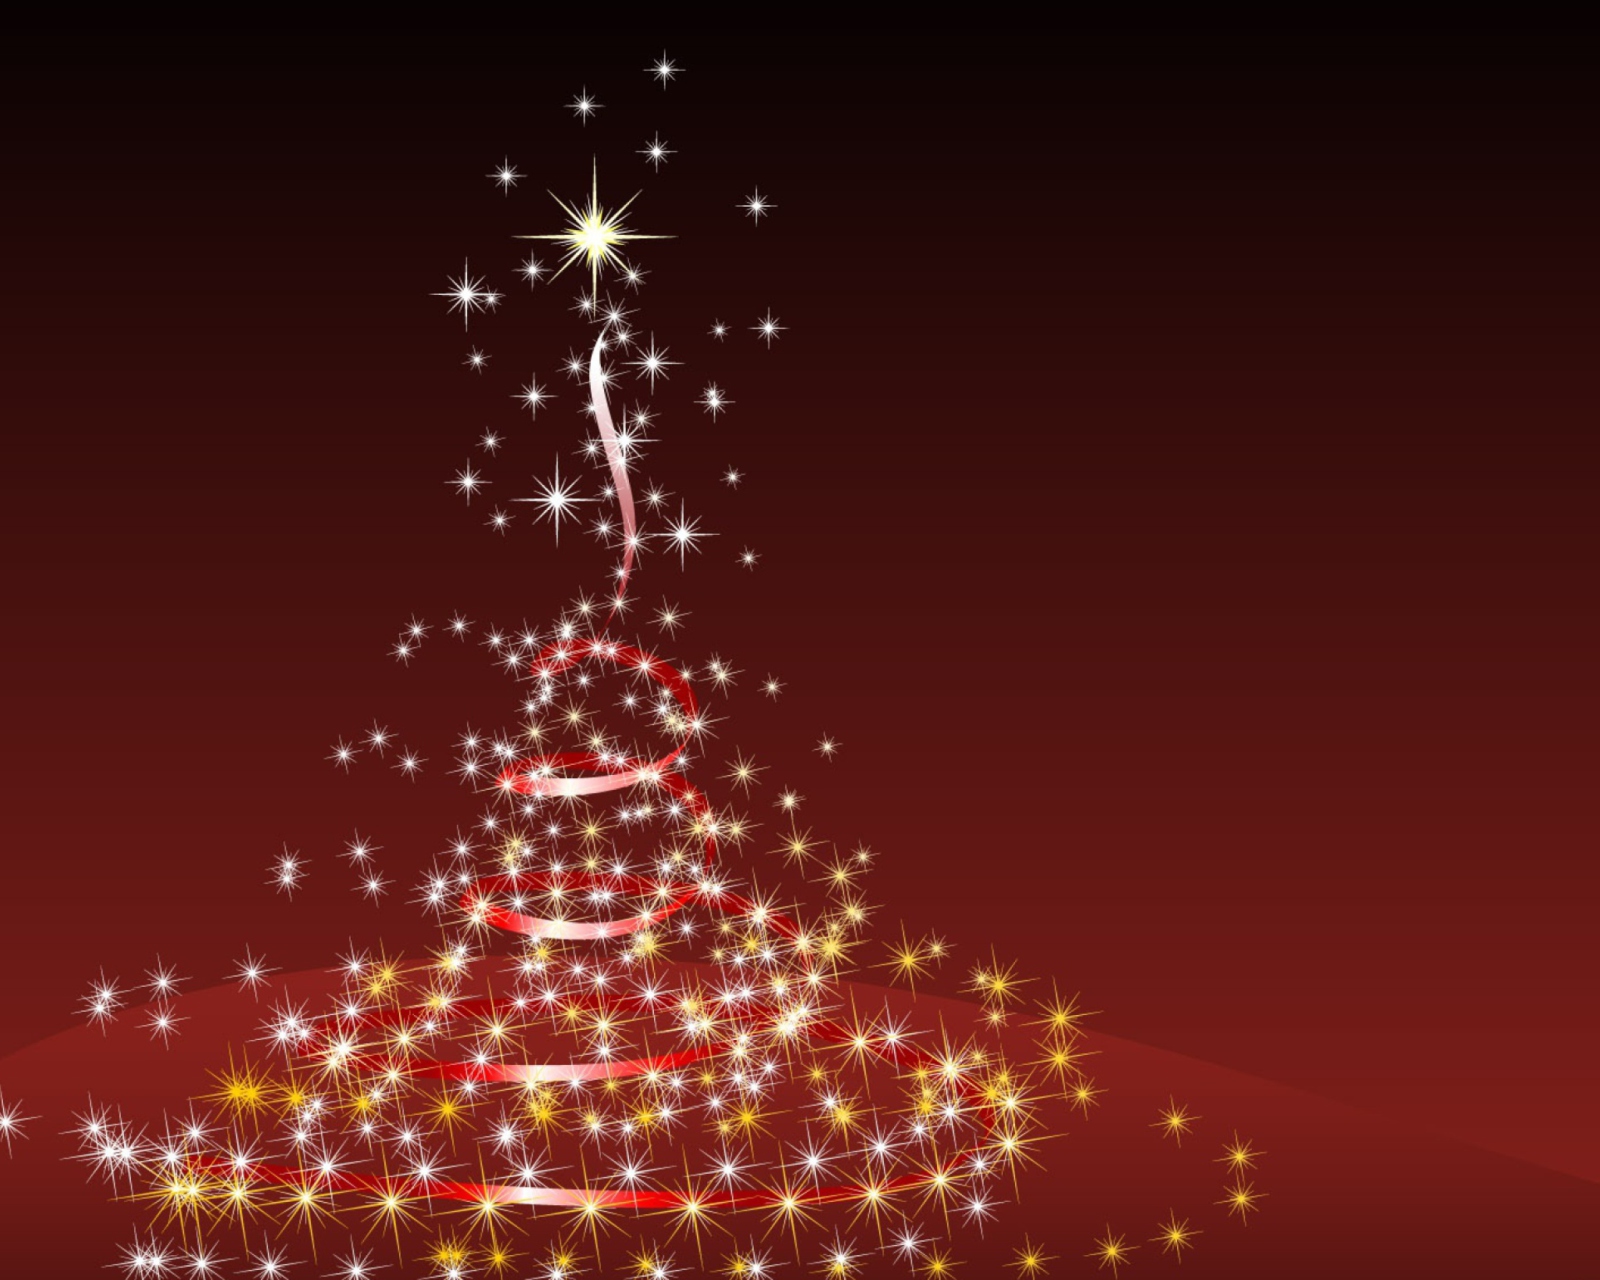 Das Merry Christmas Lights Wallpaper 1600x1280